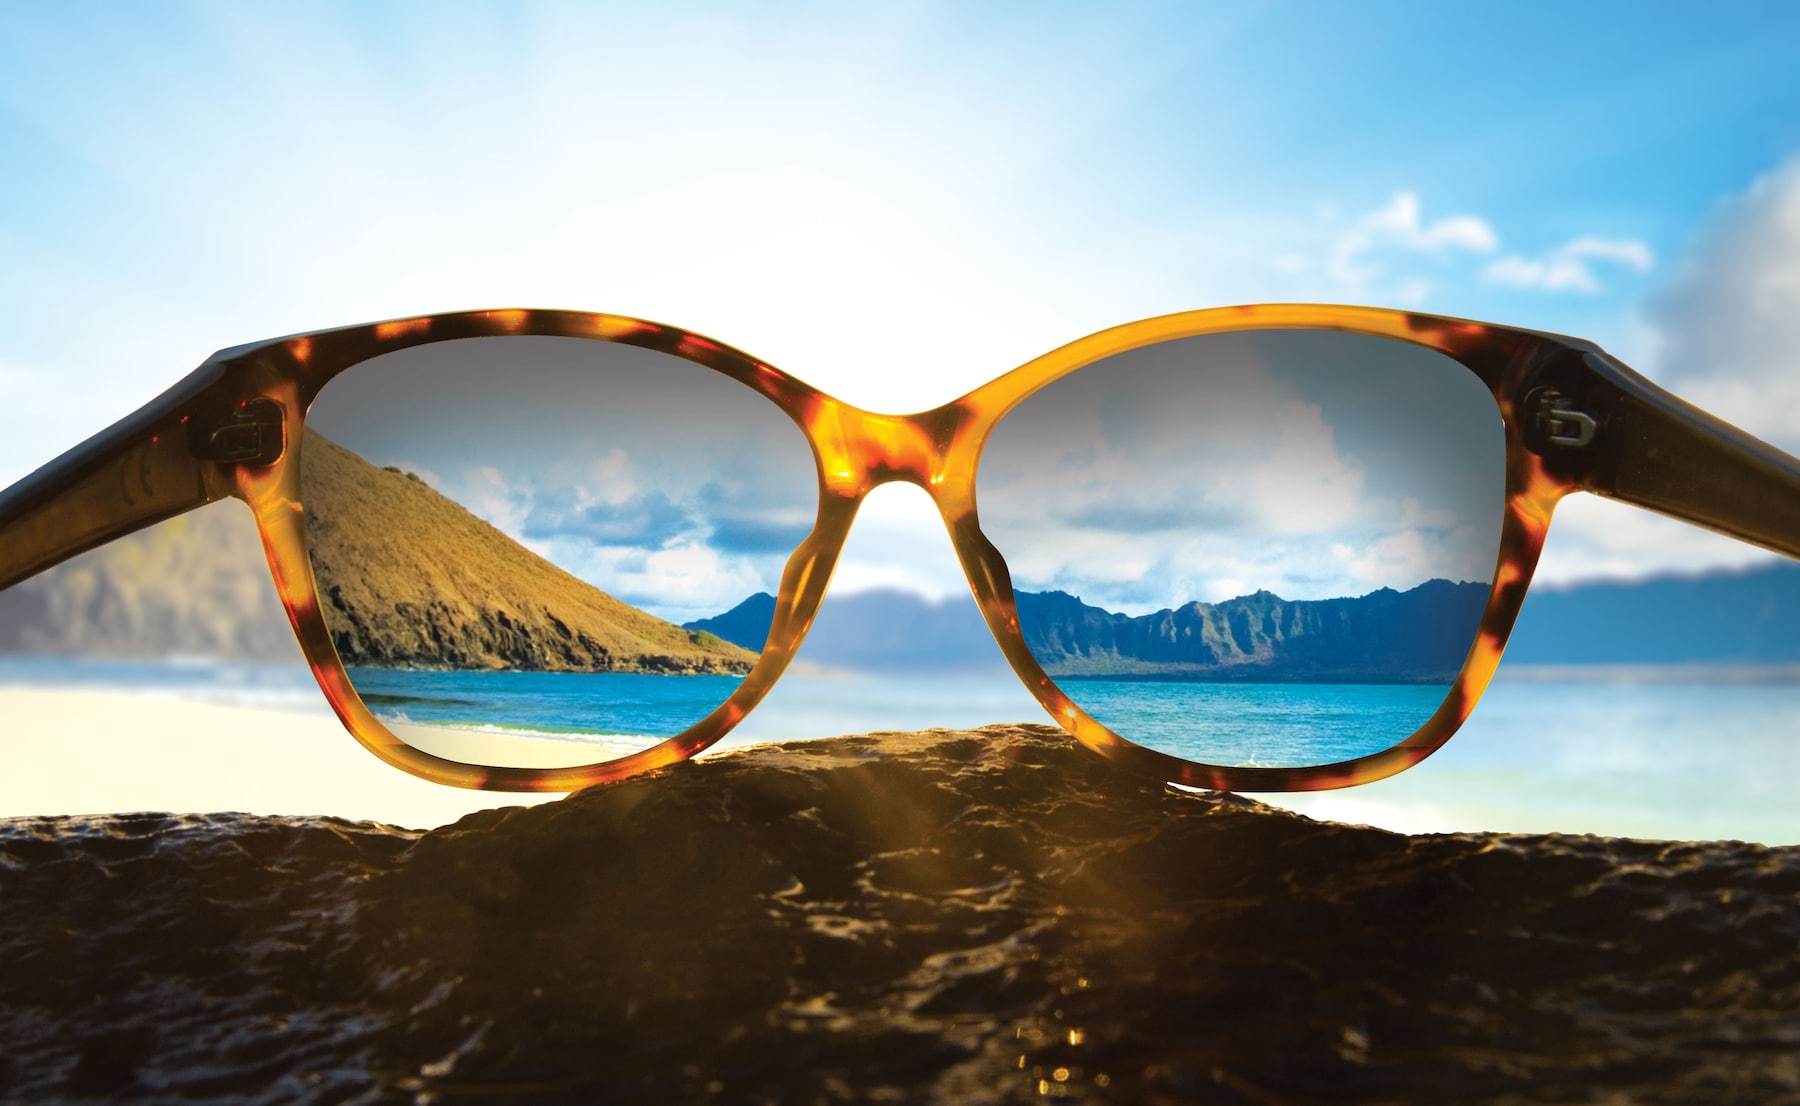 vision à travers des lunettes de soleil à monture écaille pour voir les falaises de l'océan